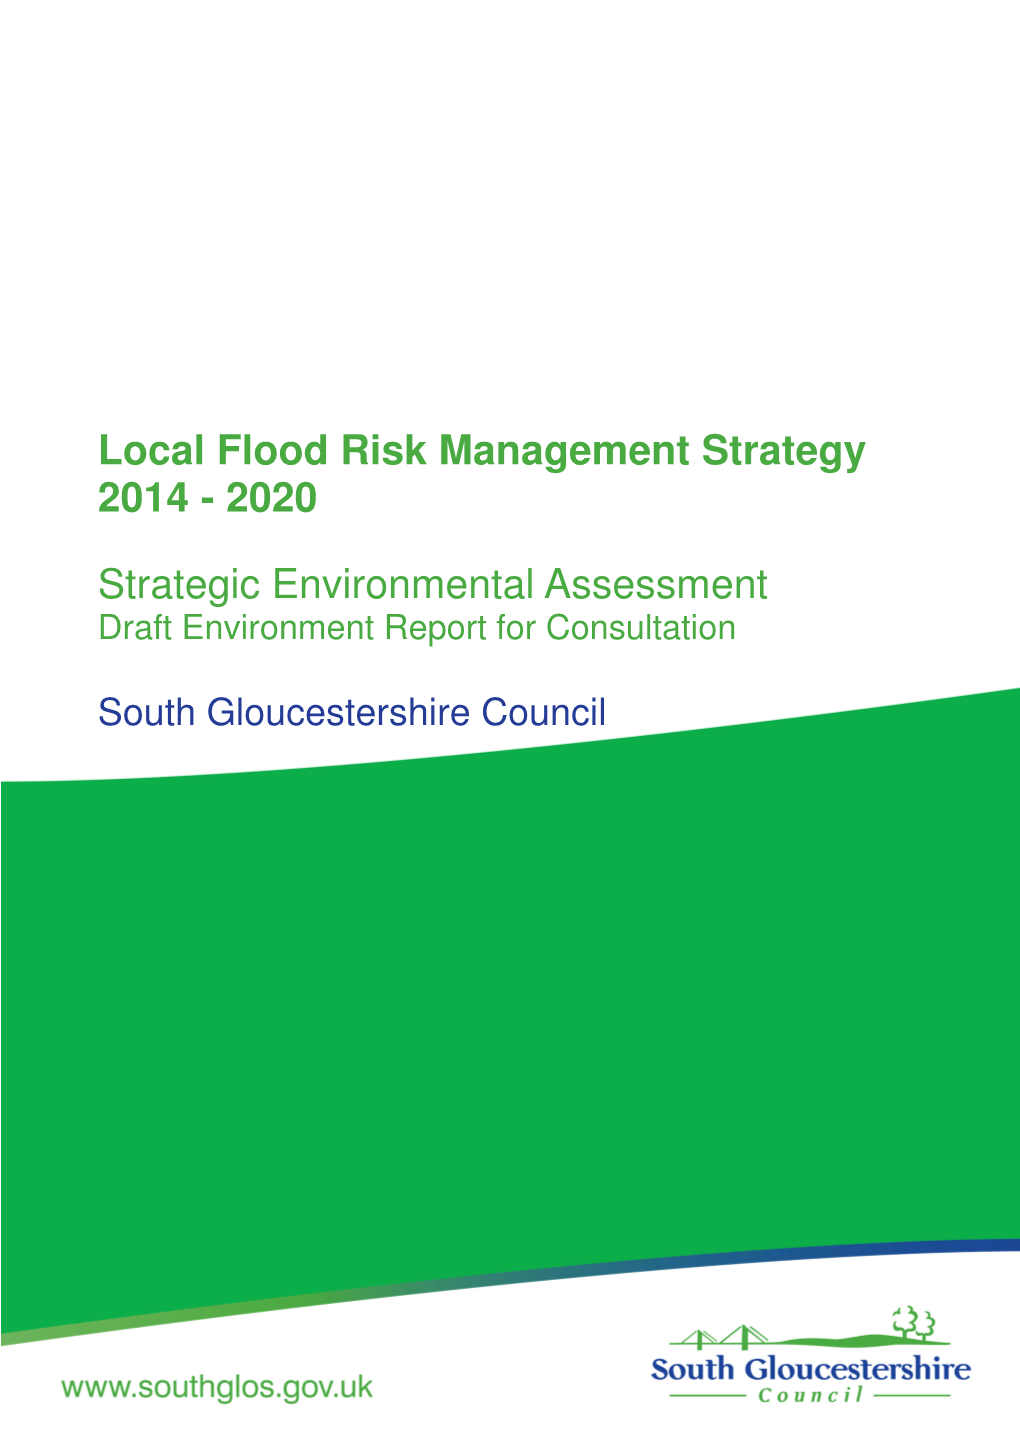 Strategic Environmental Assessment Draft Environment Report for Consultation